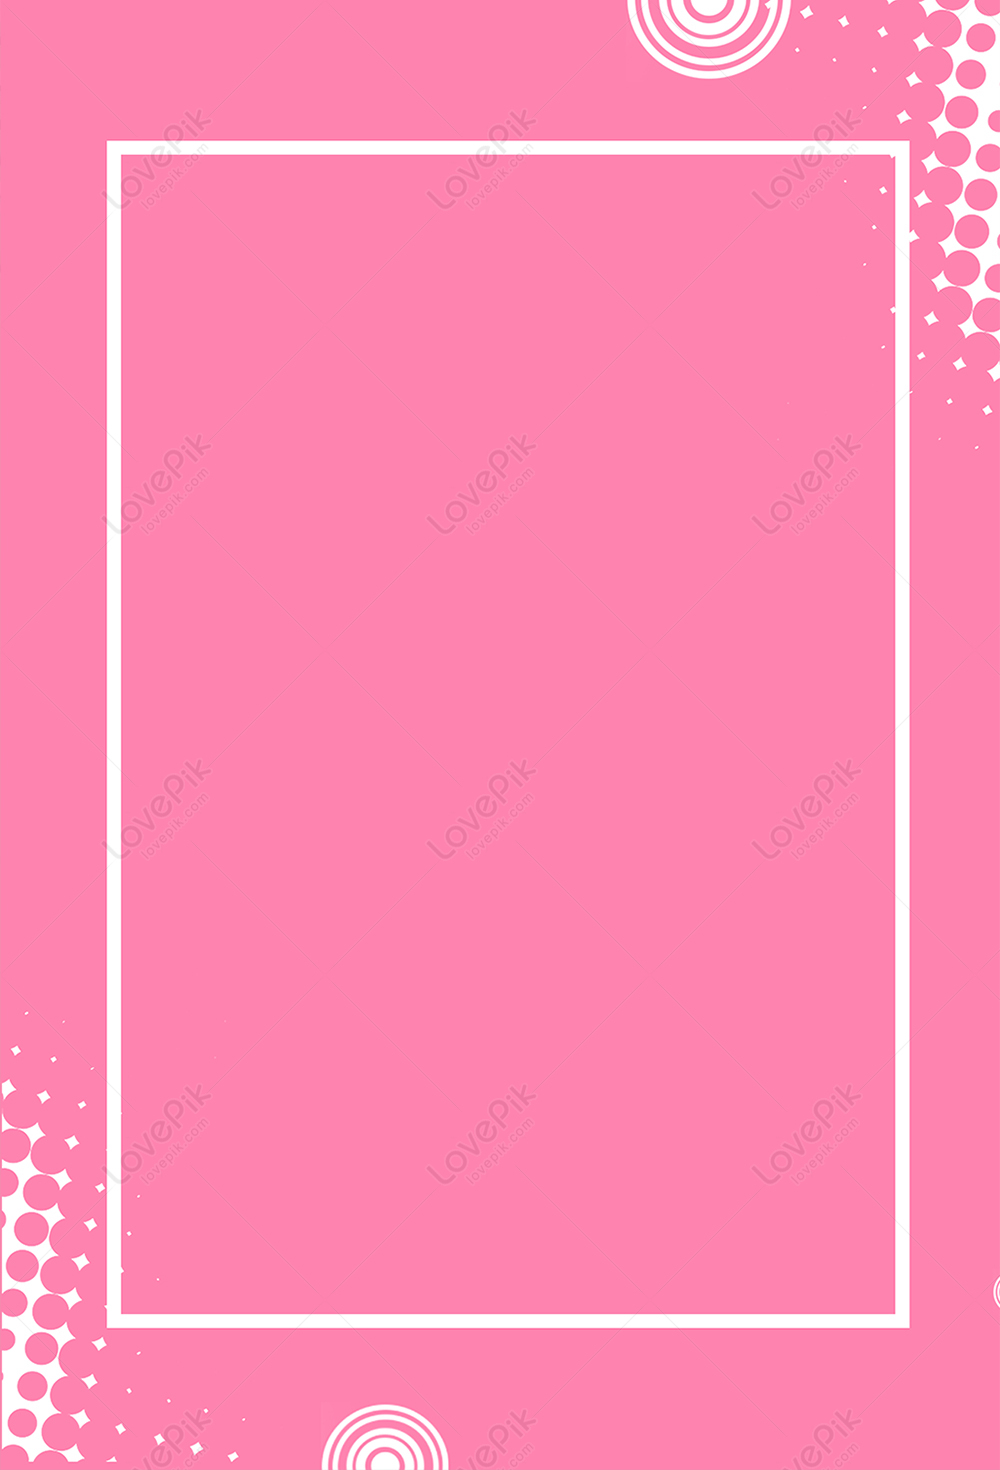 Nền poster nữ tính màu hồng là sự lựa chọn hoàn hảo để trang trí phòng của bạn. Với thiết kế tinh tế và màu sắc nữ tính, nó sẽ giúp cho không gian trở nên ngọt ngào và dễ thương tới vô cùng. Hãy cùng khám phá những poster nữ tính màu hồng đẹp để tạo nên một không gian tinh tế và đầy sức sống.